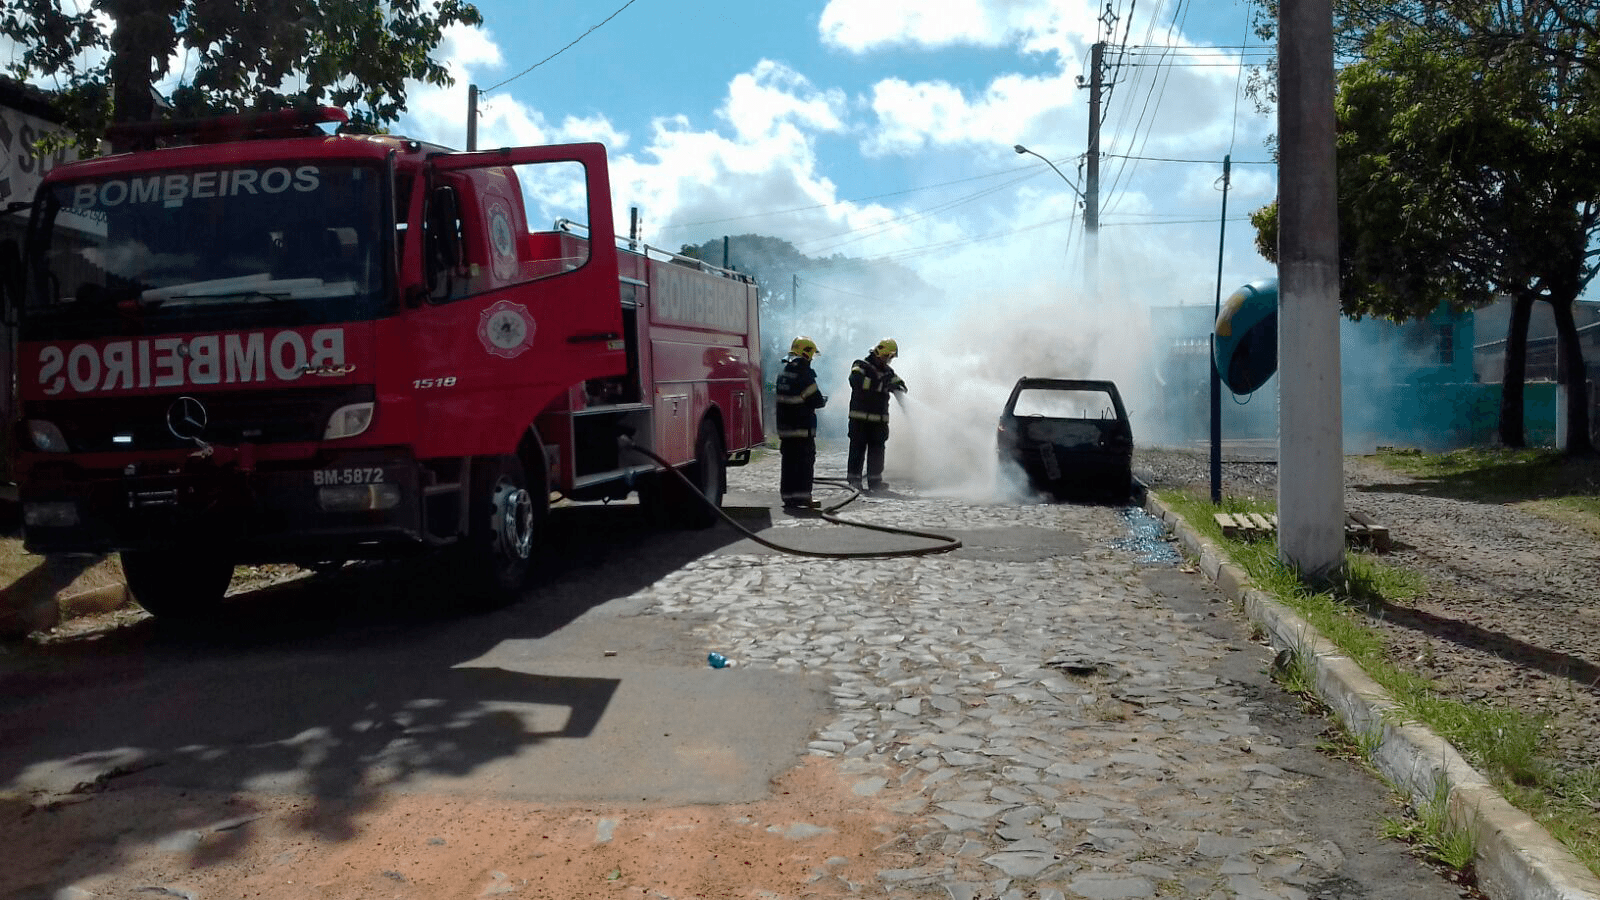 Veículo pega fogo e fica completamente destruído em Gravataí